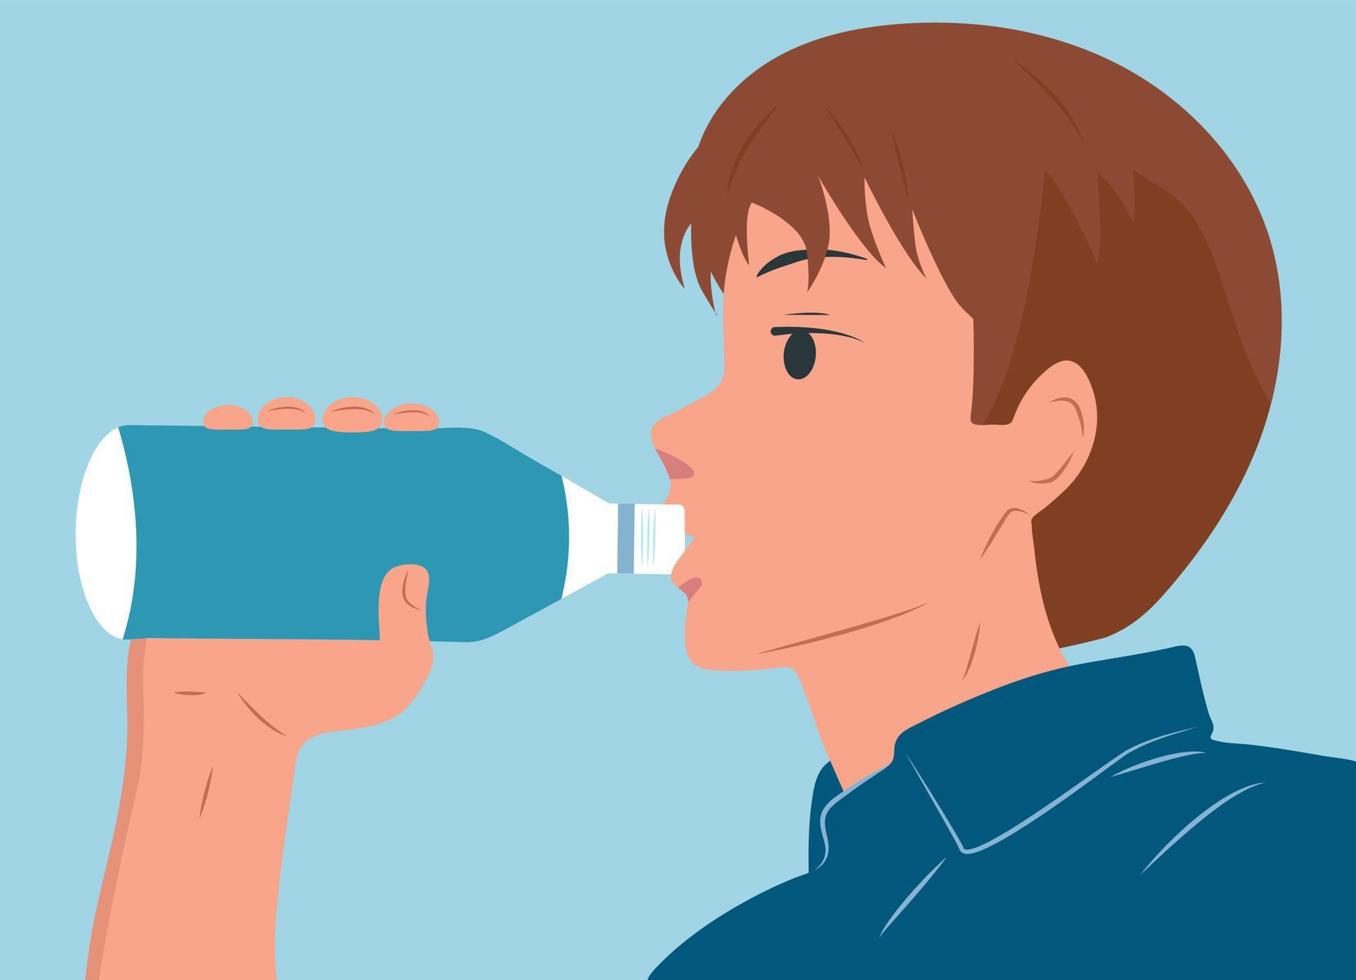 o cara bebe água de uma garrafa. ilustração em vetor plana.